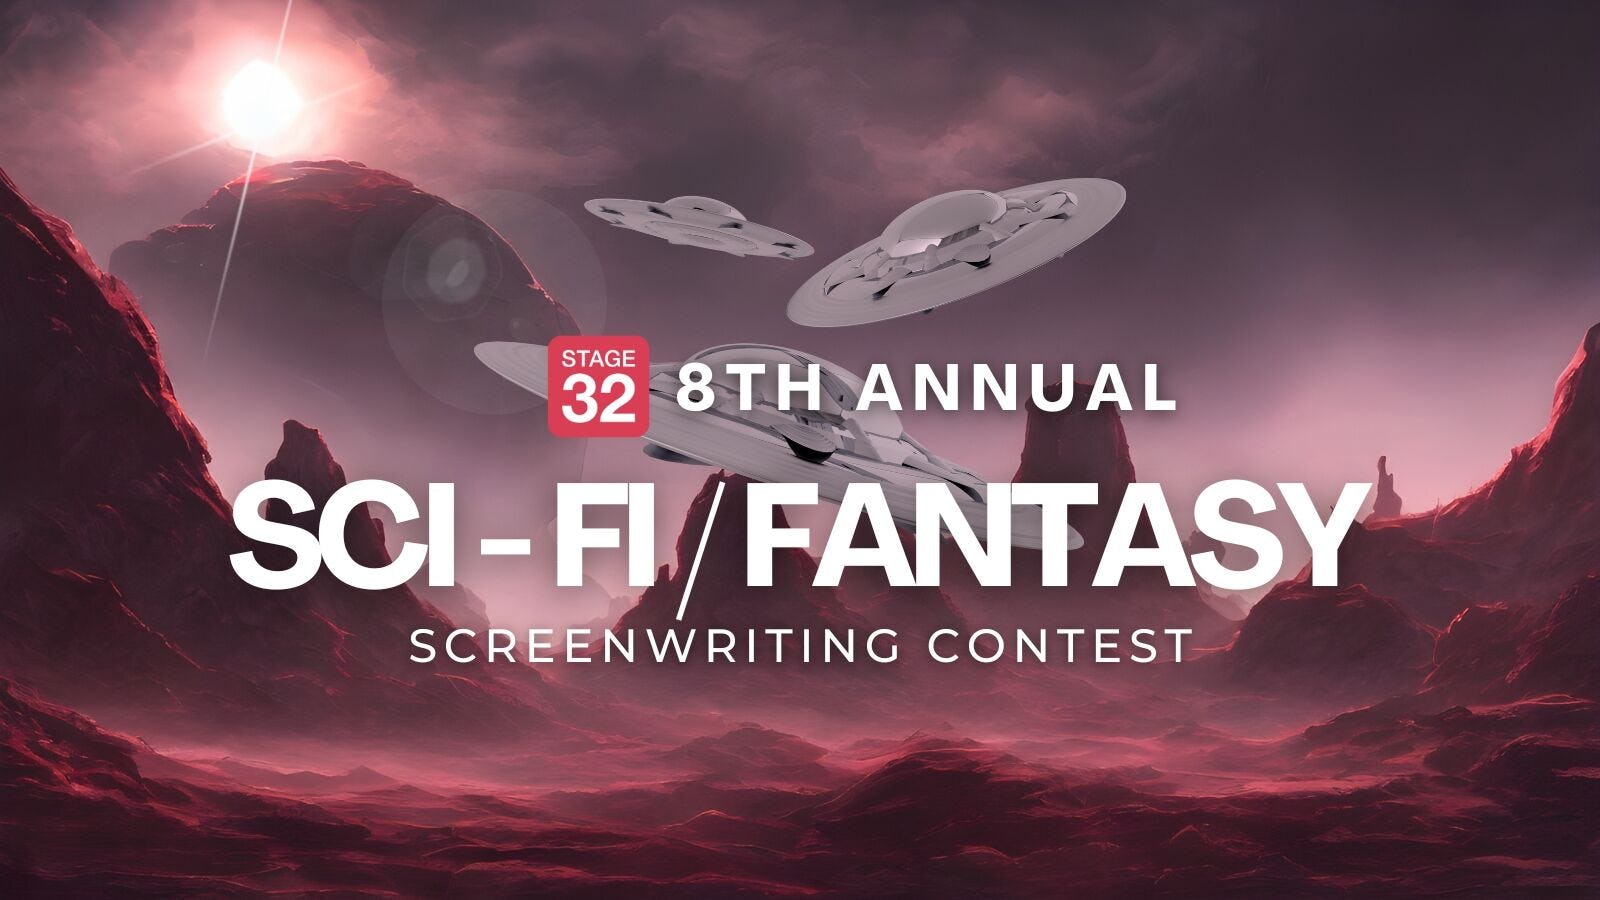 Announcing the 8th Annual Sci-Fi/Fantasy Screenwriting Contest